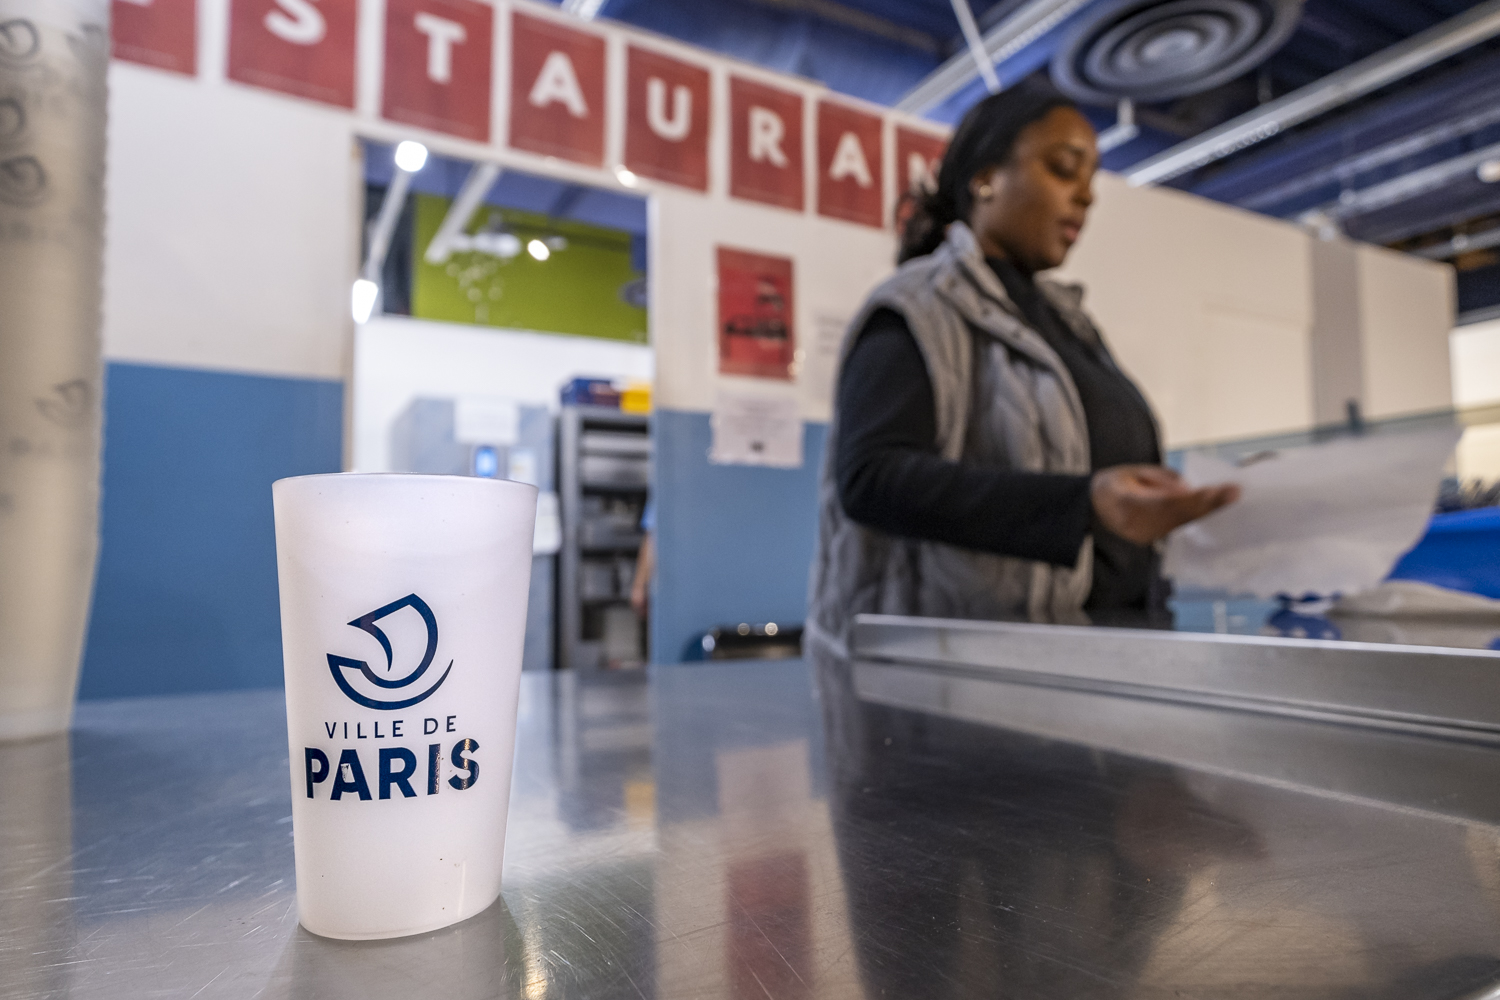 Une volontaire prépare des sets de couverts et des verres marqués "Ville de Paris" au centre d'accueil de la porte de Saint-Cloud